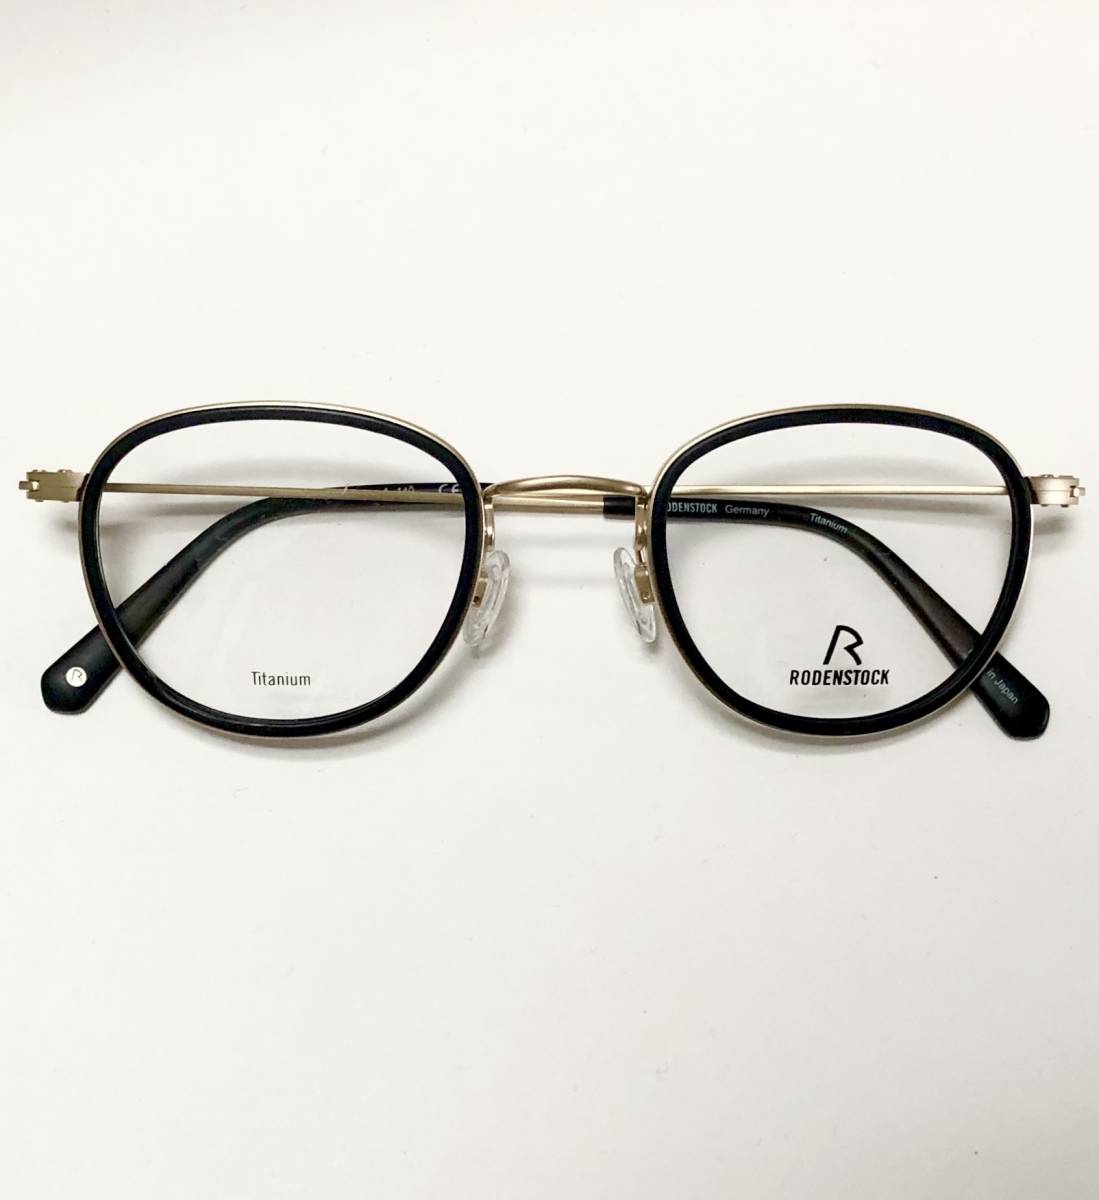 処分価格 定価33,000円 チタン素材 ローデンストック 日本製メガネ 黒